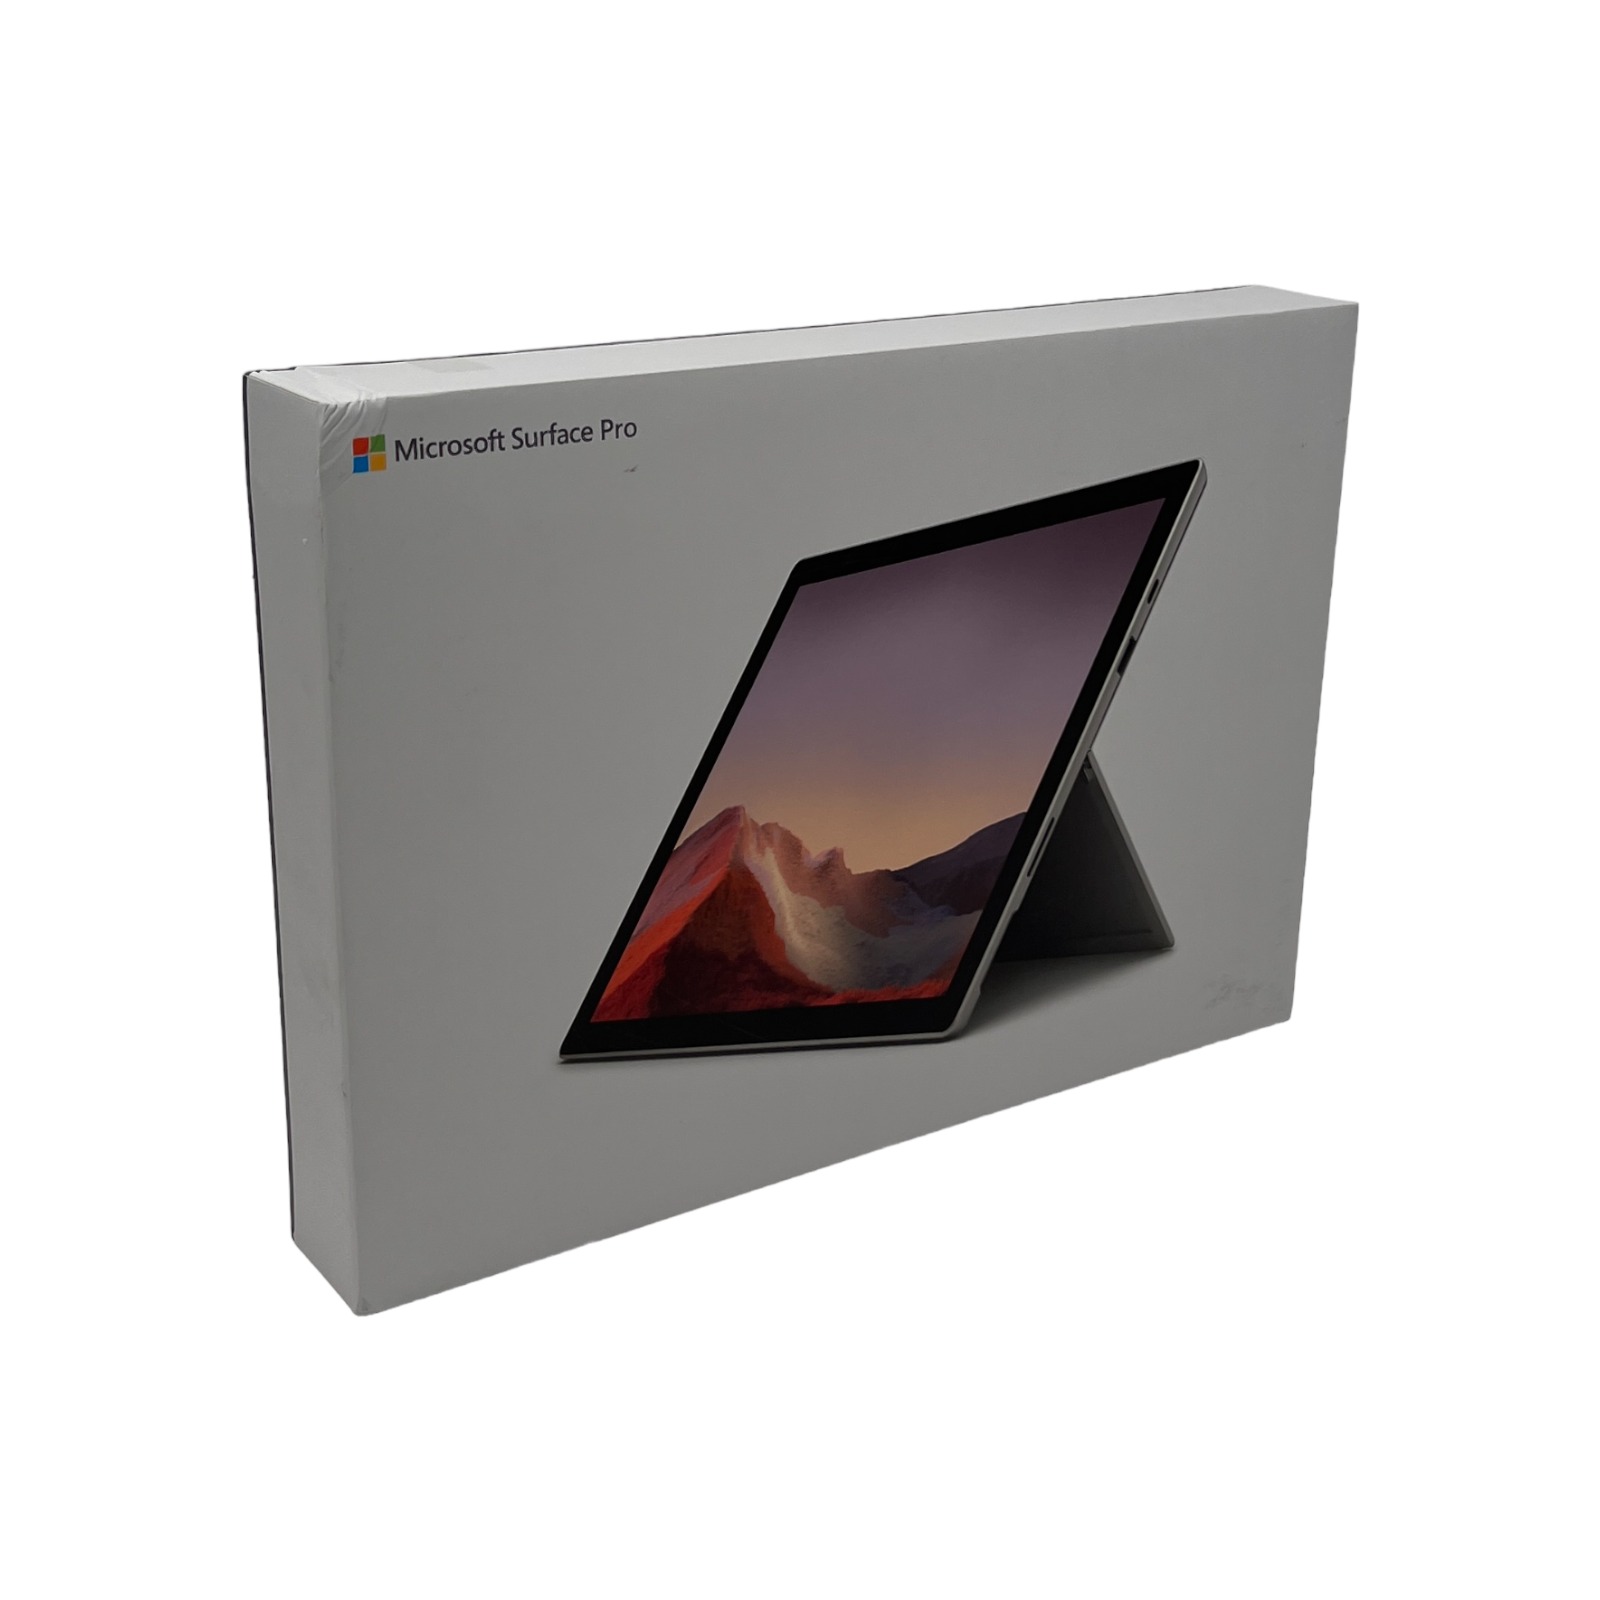 定番最新品マイクロソフト Surface Pro7 i3/4GB/128GB Windowsタブレット本体